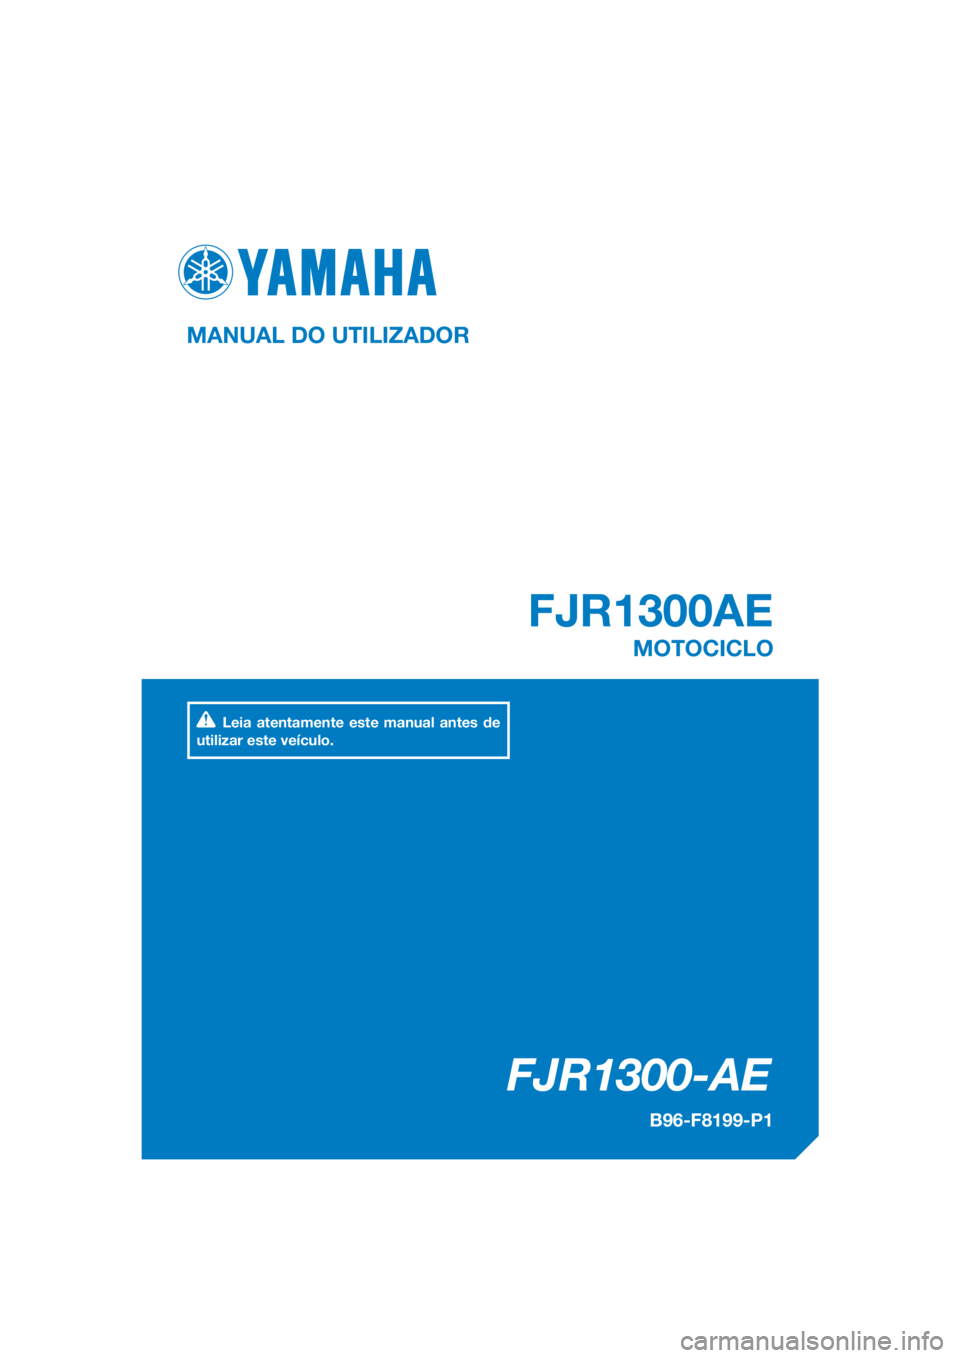 YAMAHA FJR1300AE 2018  Manual de utilização (in Portuguese) DIC183
FJR1300-AE
FJR1300AE
MANUAL DO UTILIZADOR
B96-F8199-P1
MOTOCICLO
Leia atentamente este manual antes de 
utilizar este veículo.
[Portuguese  (P)] 